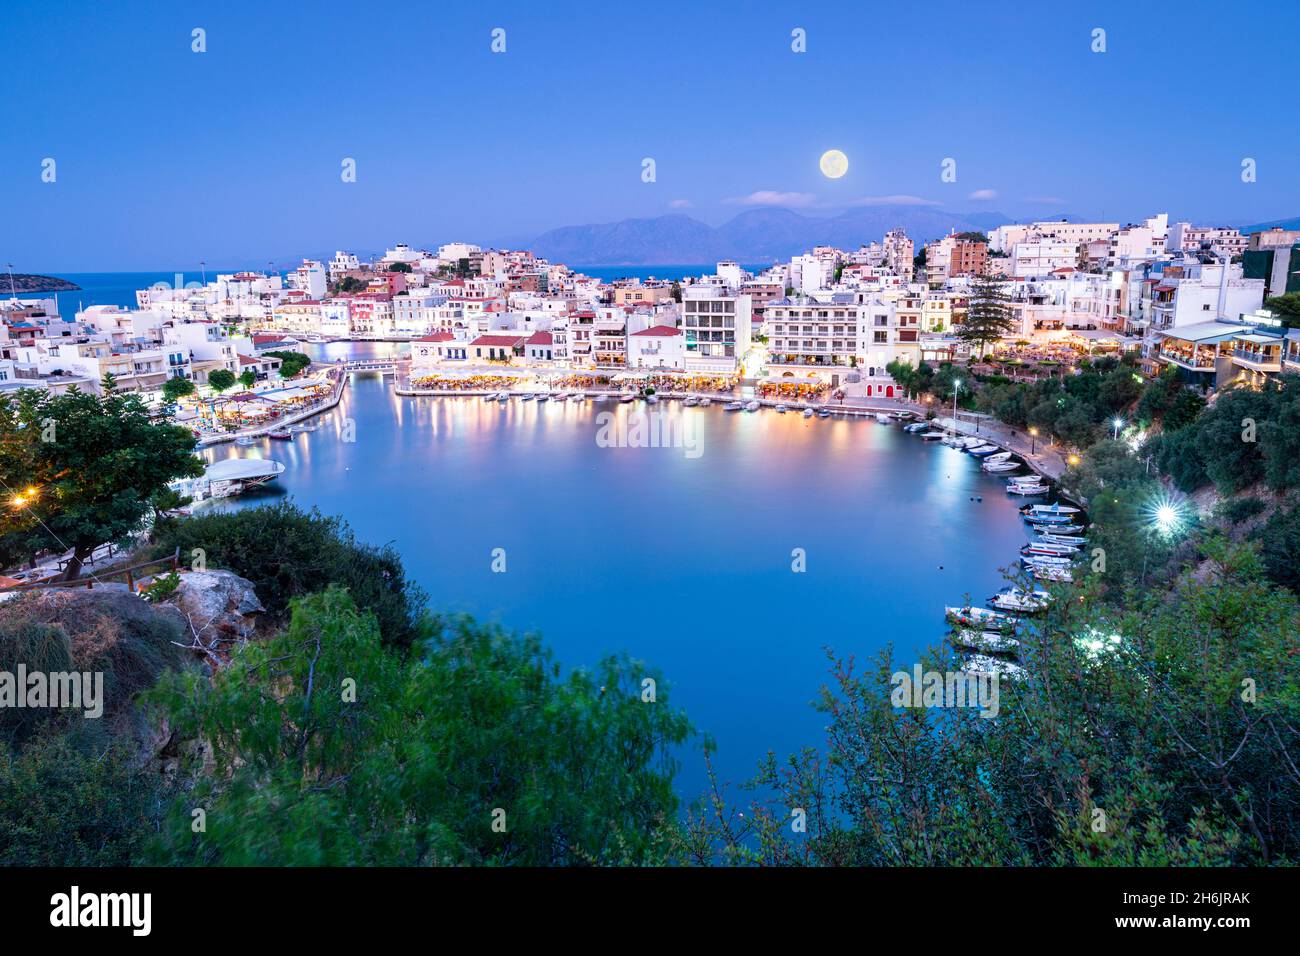 Al chiaro di luna sulla città vecchia di Agios Nikolaos e sul lago al tramonto, Prefettura di Lasithi, Creta, Isole greche, Grecia, Europa Foto Stock